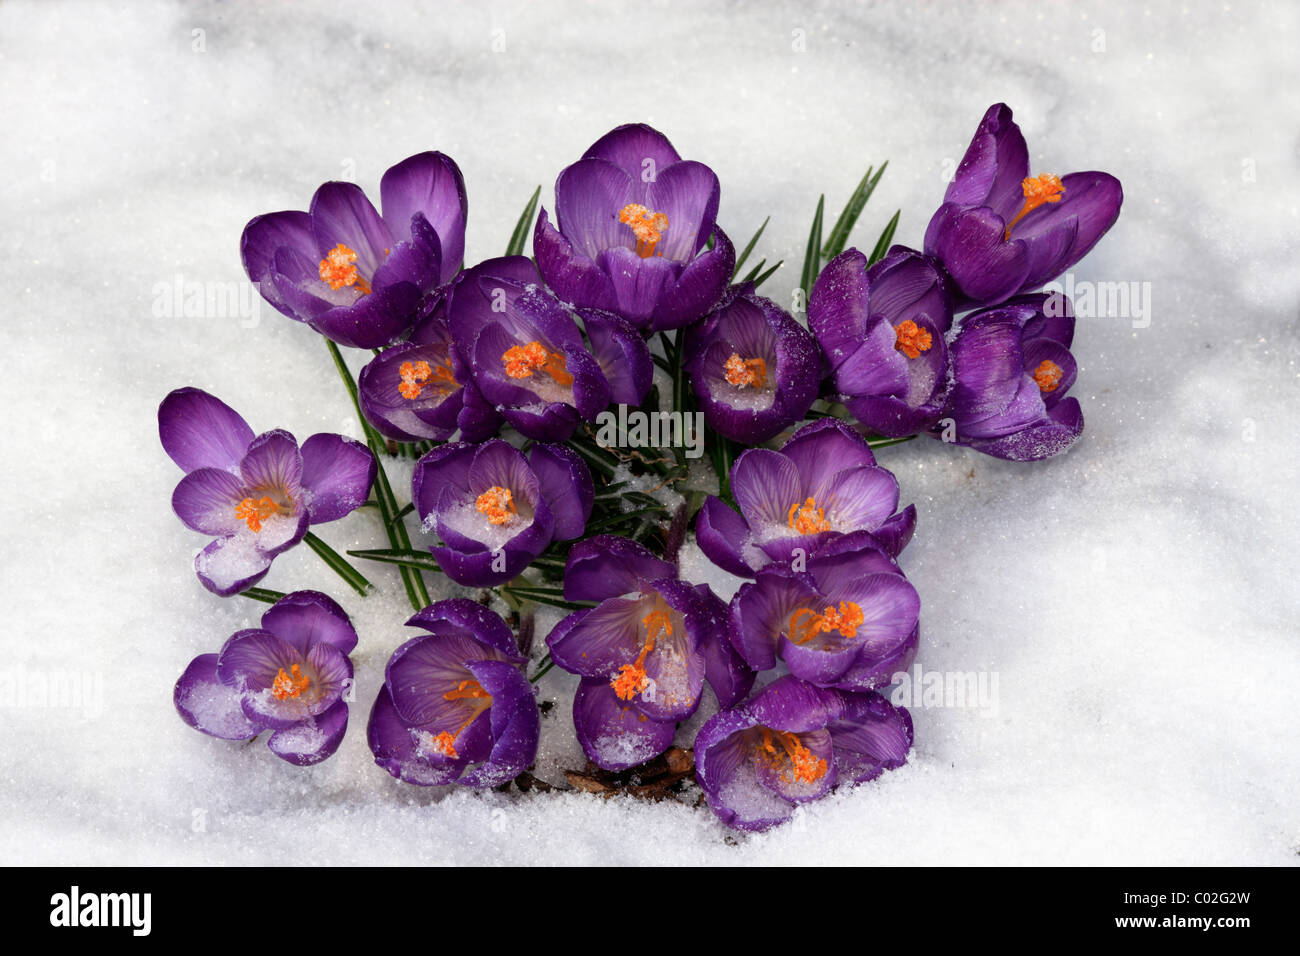 Crocus (crocus vernus), fioritura nella neve Foto Stock